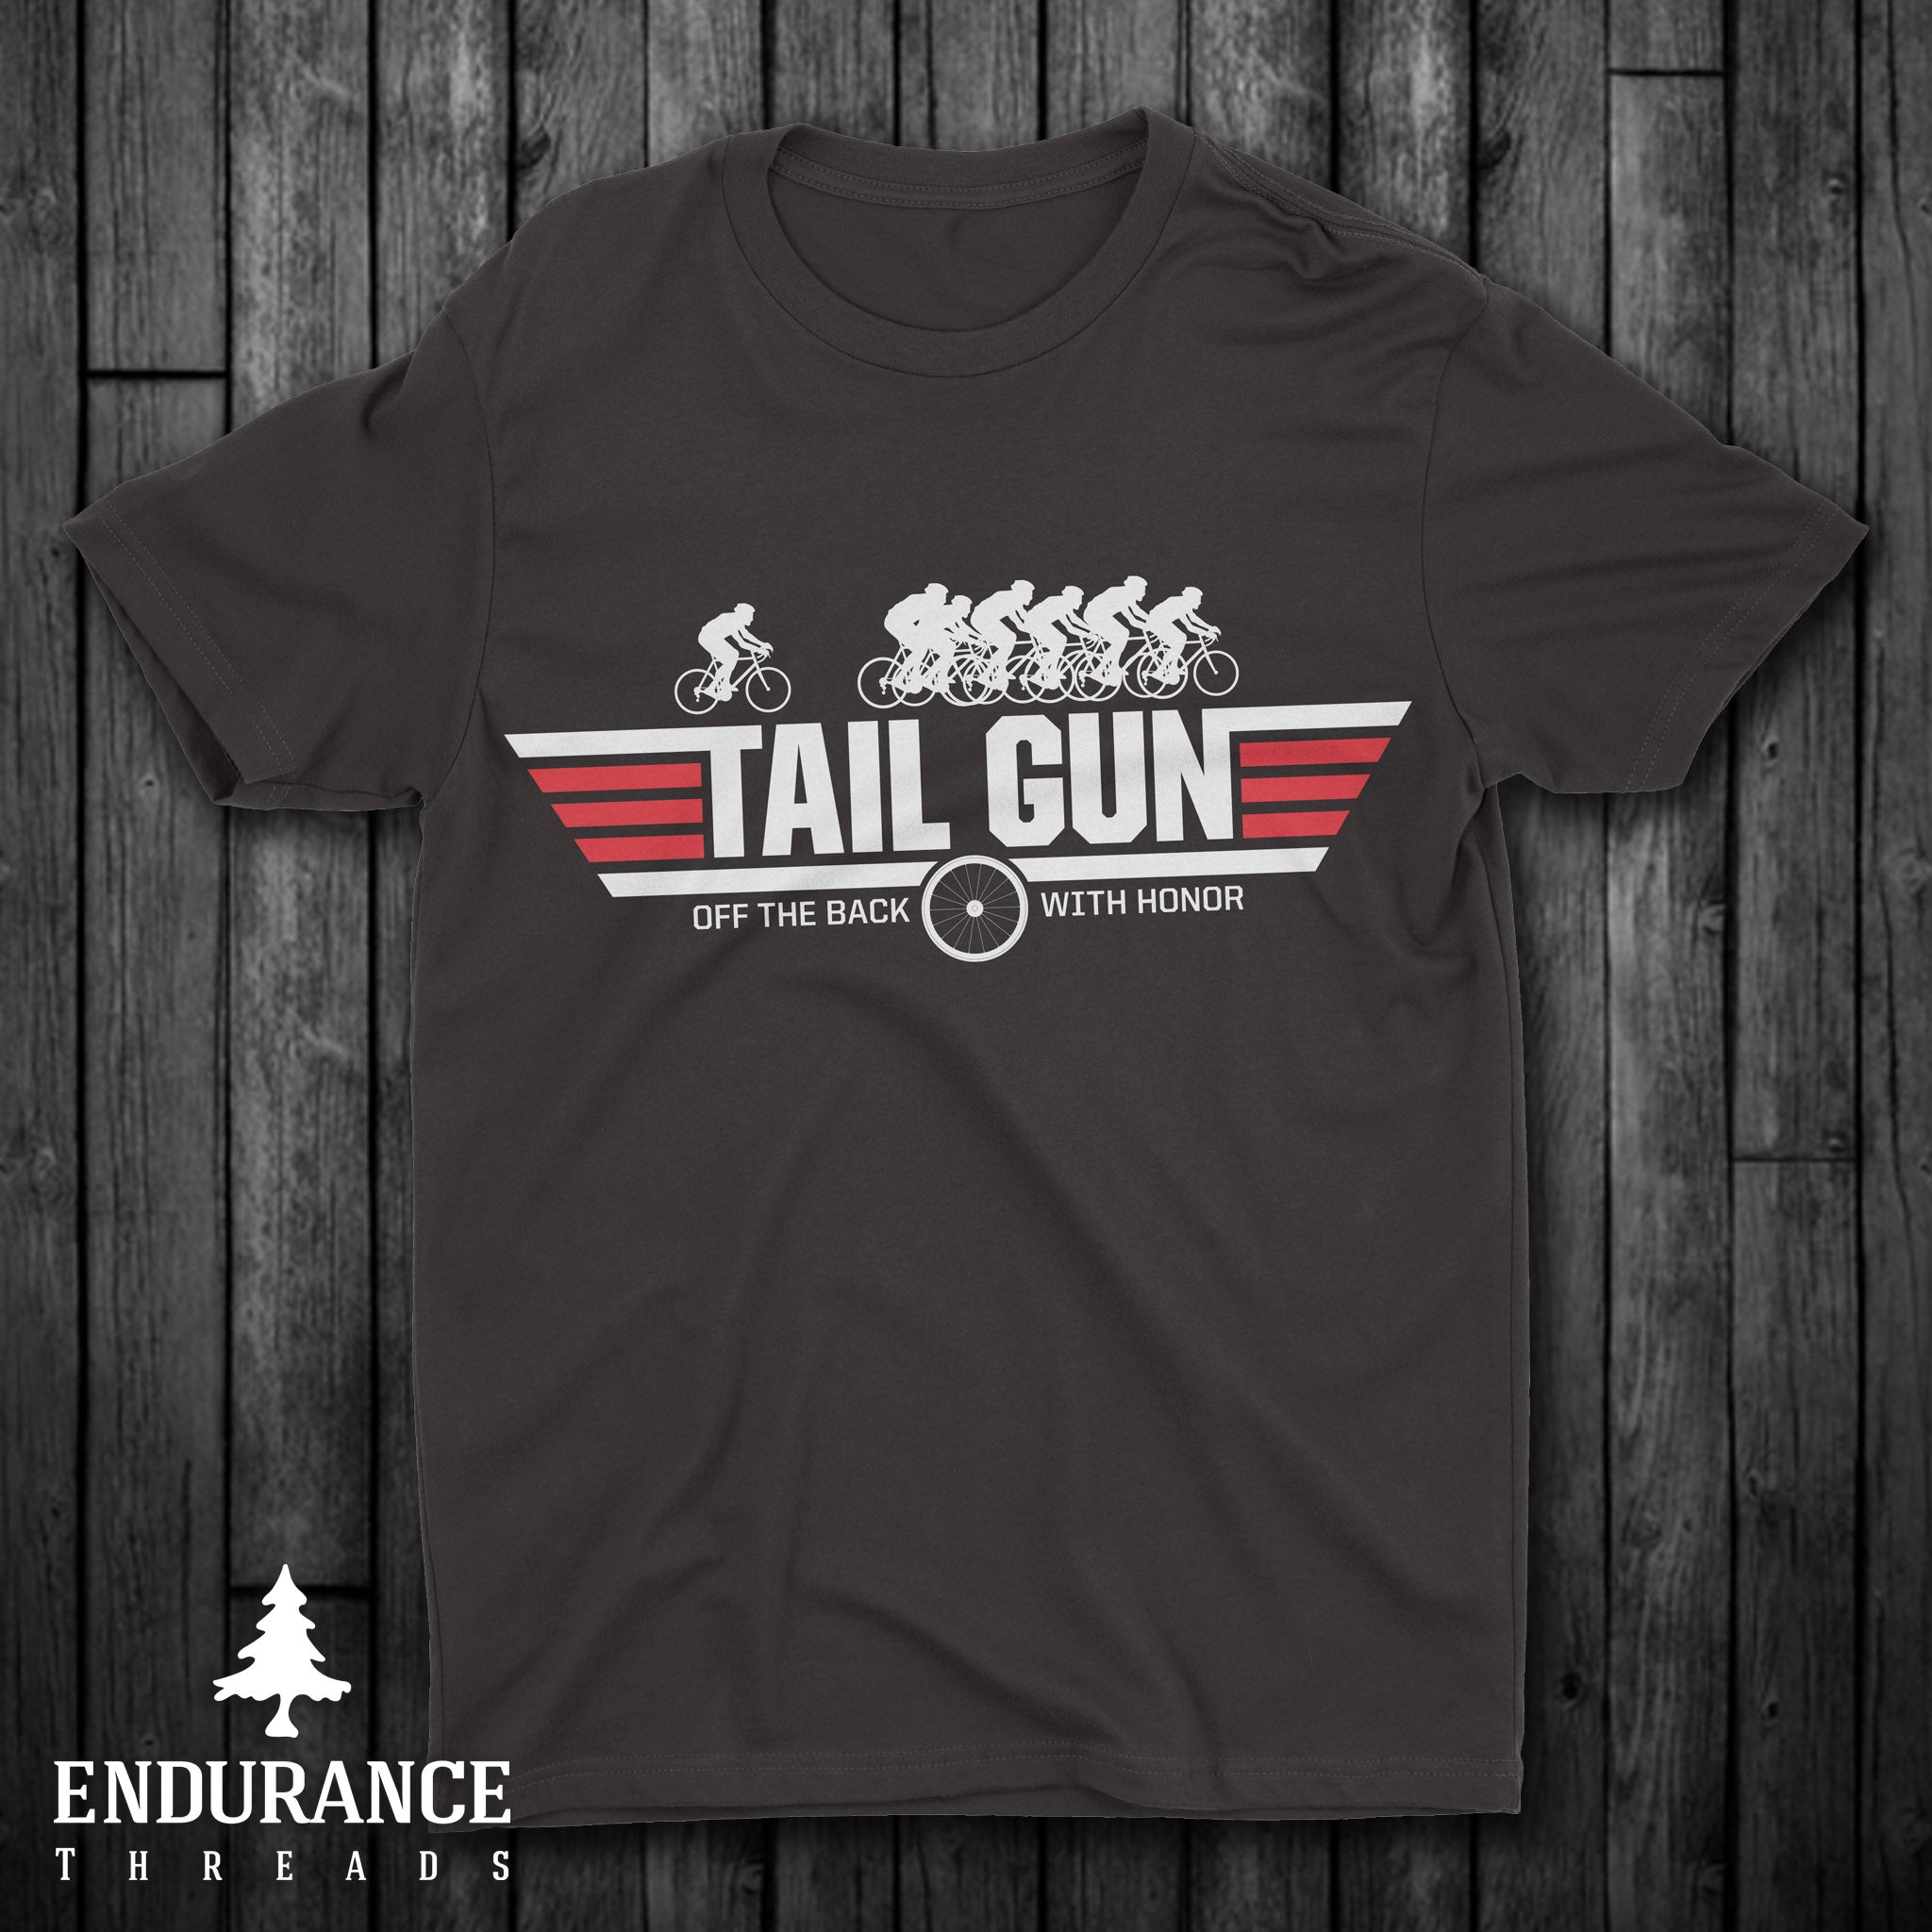 Tail Gun - Endurance Threads